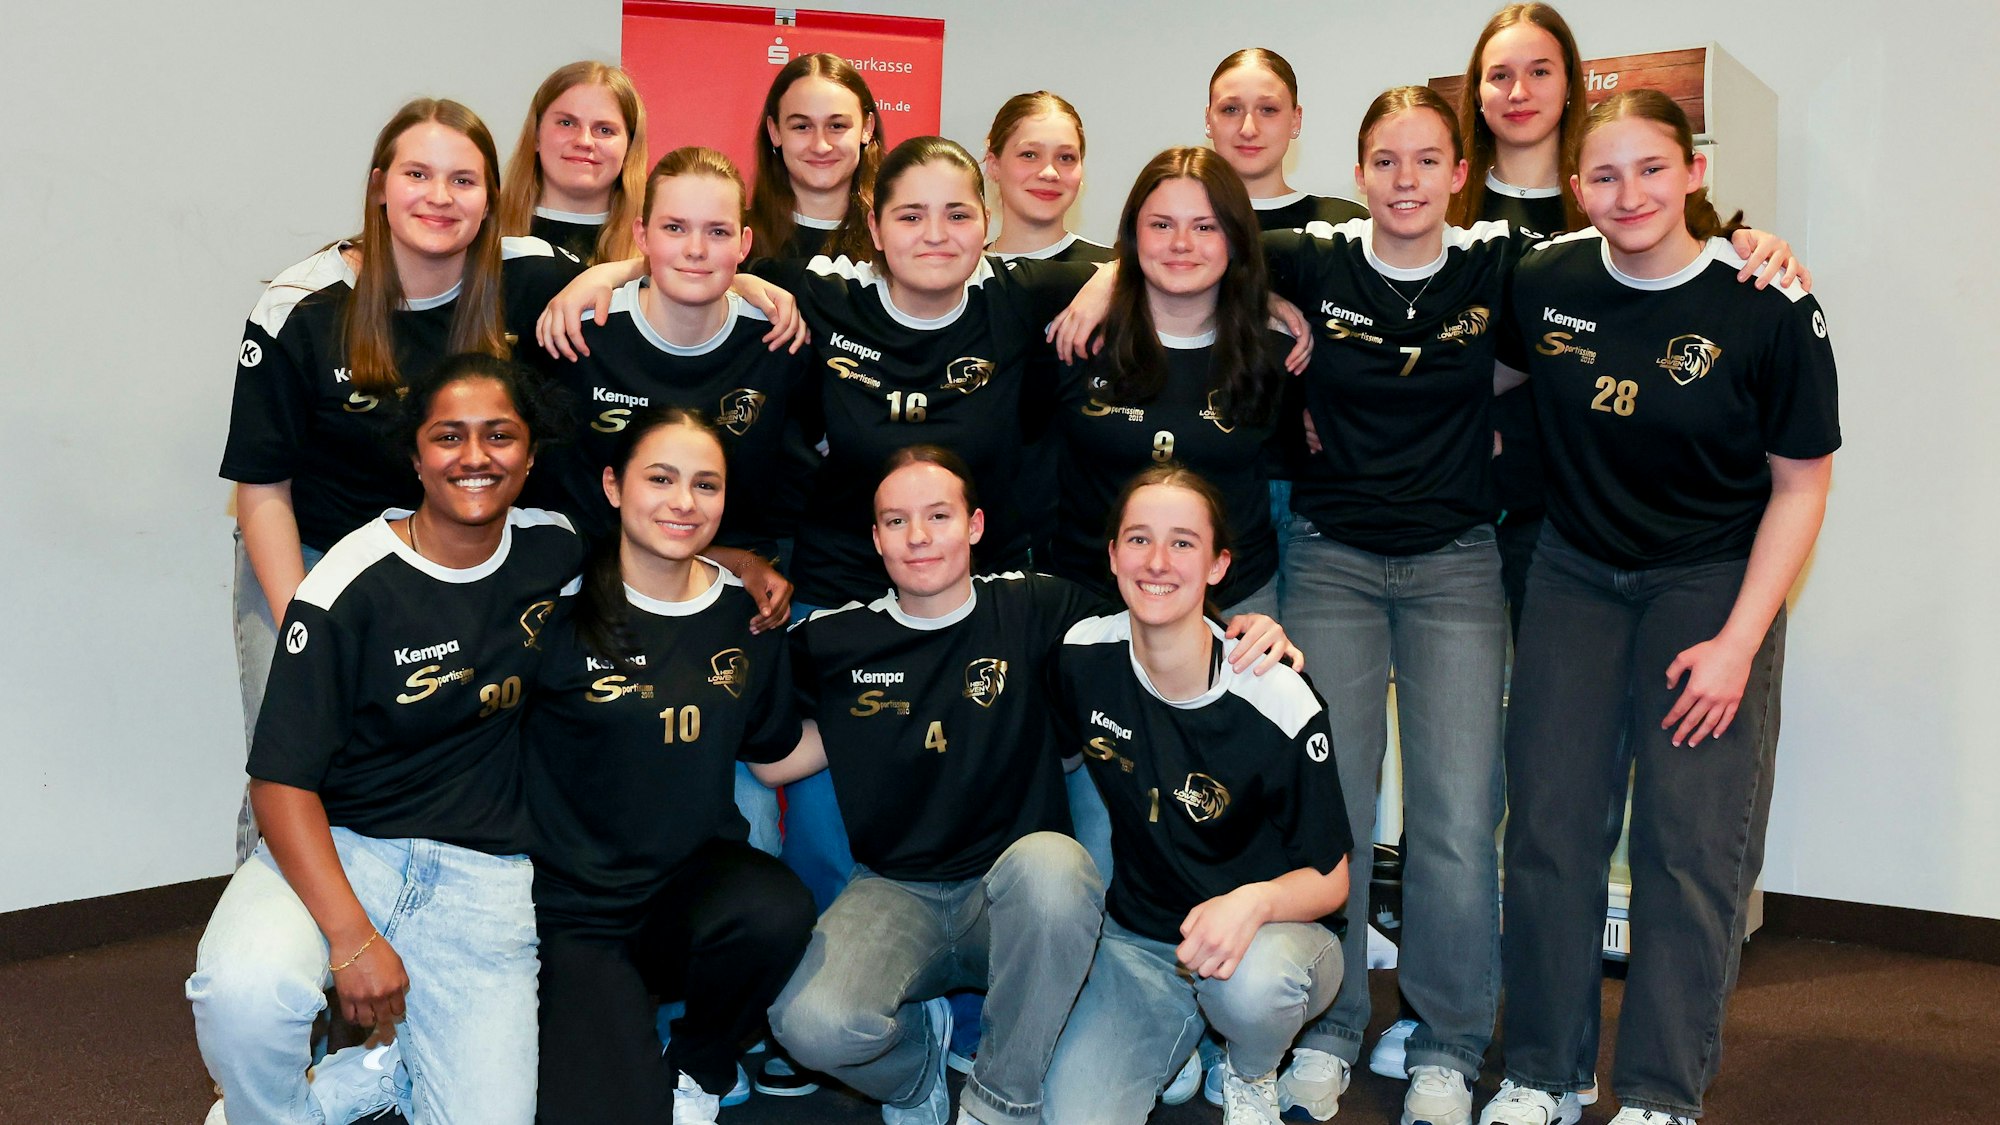 Gruppenfoto der B-Jugend-Handballerinnen der HBD Löwen Oberberg.